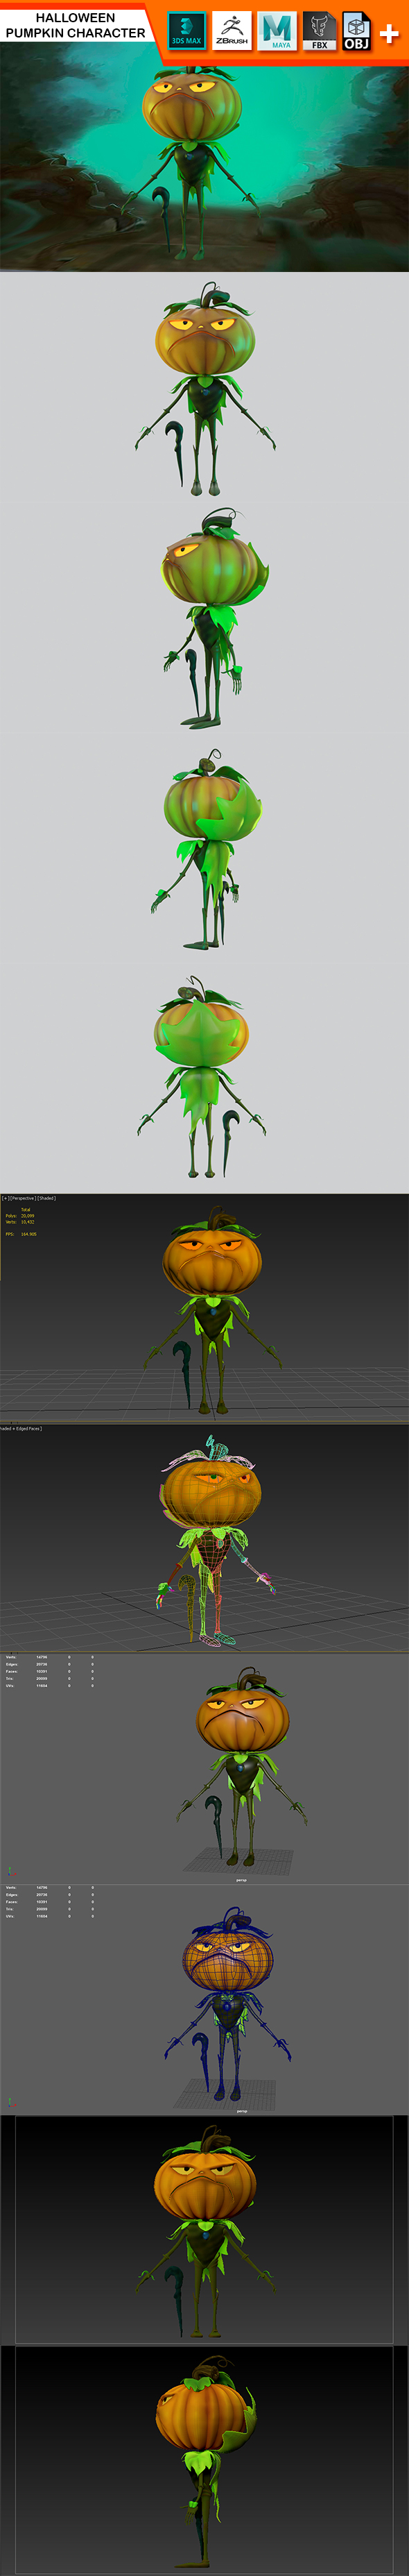 Halloween Pumpkin Character - 3Docean 24988475